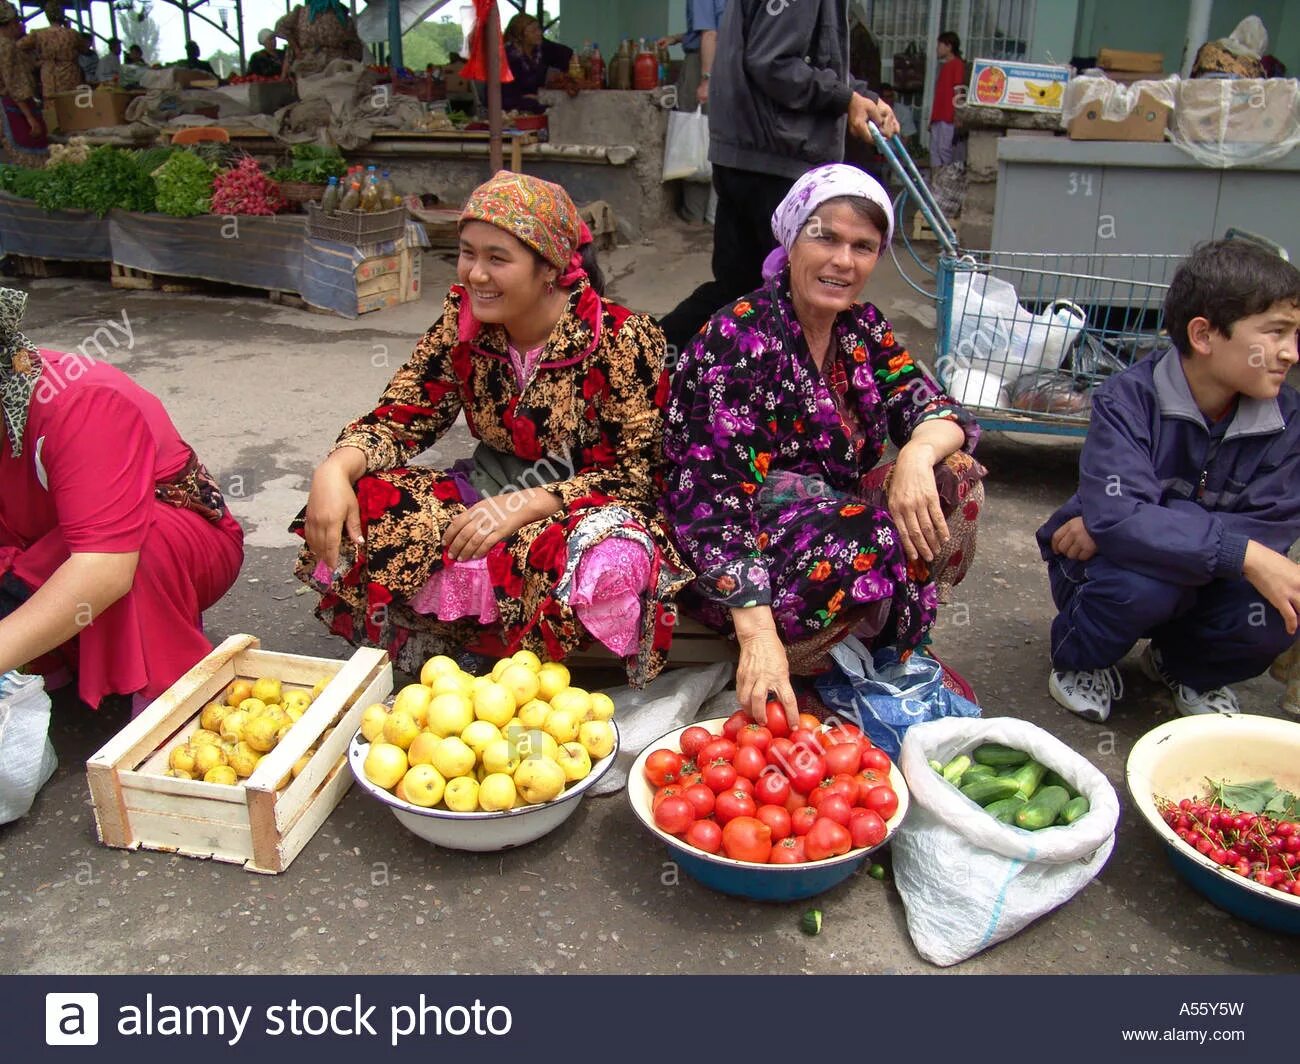 Сколько времени в узбекистане 00 00. Женщины центральной Азии базар. Время в Узбекистане сейчас. Uzbekistan stock Markets. Сечас вирема Узбекистон.